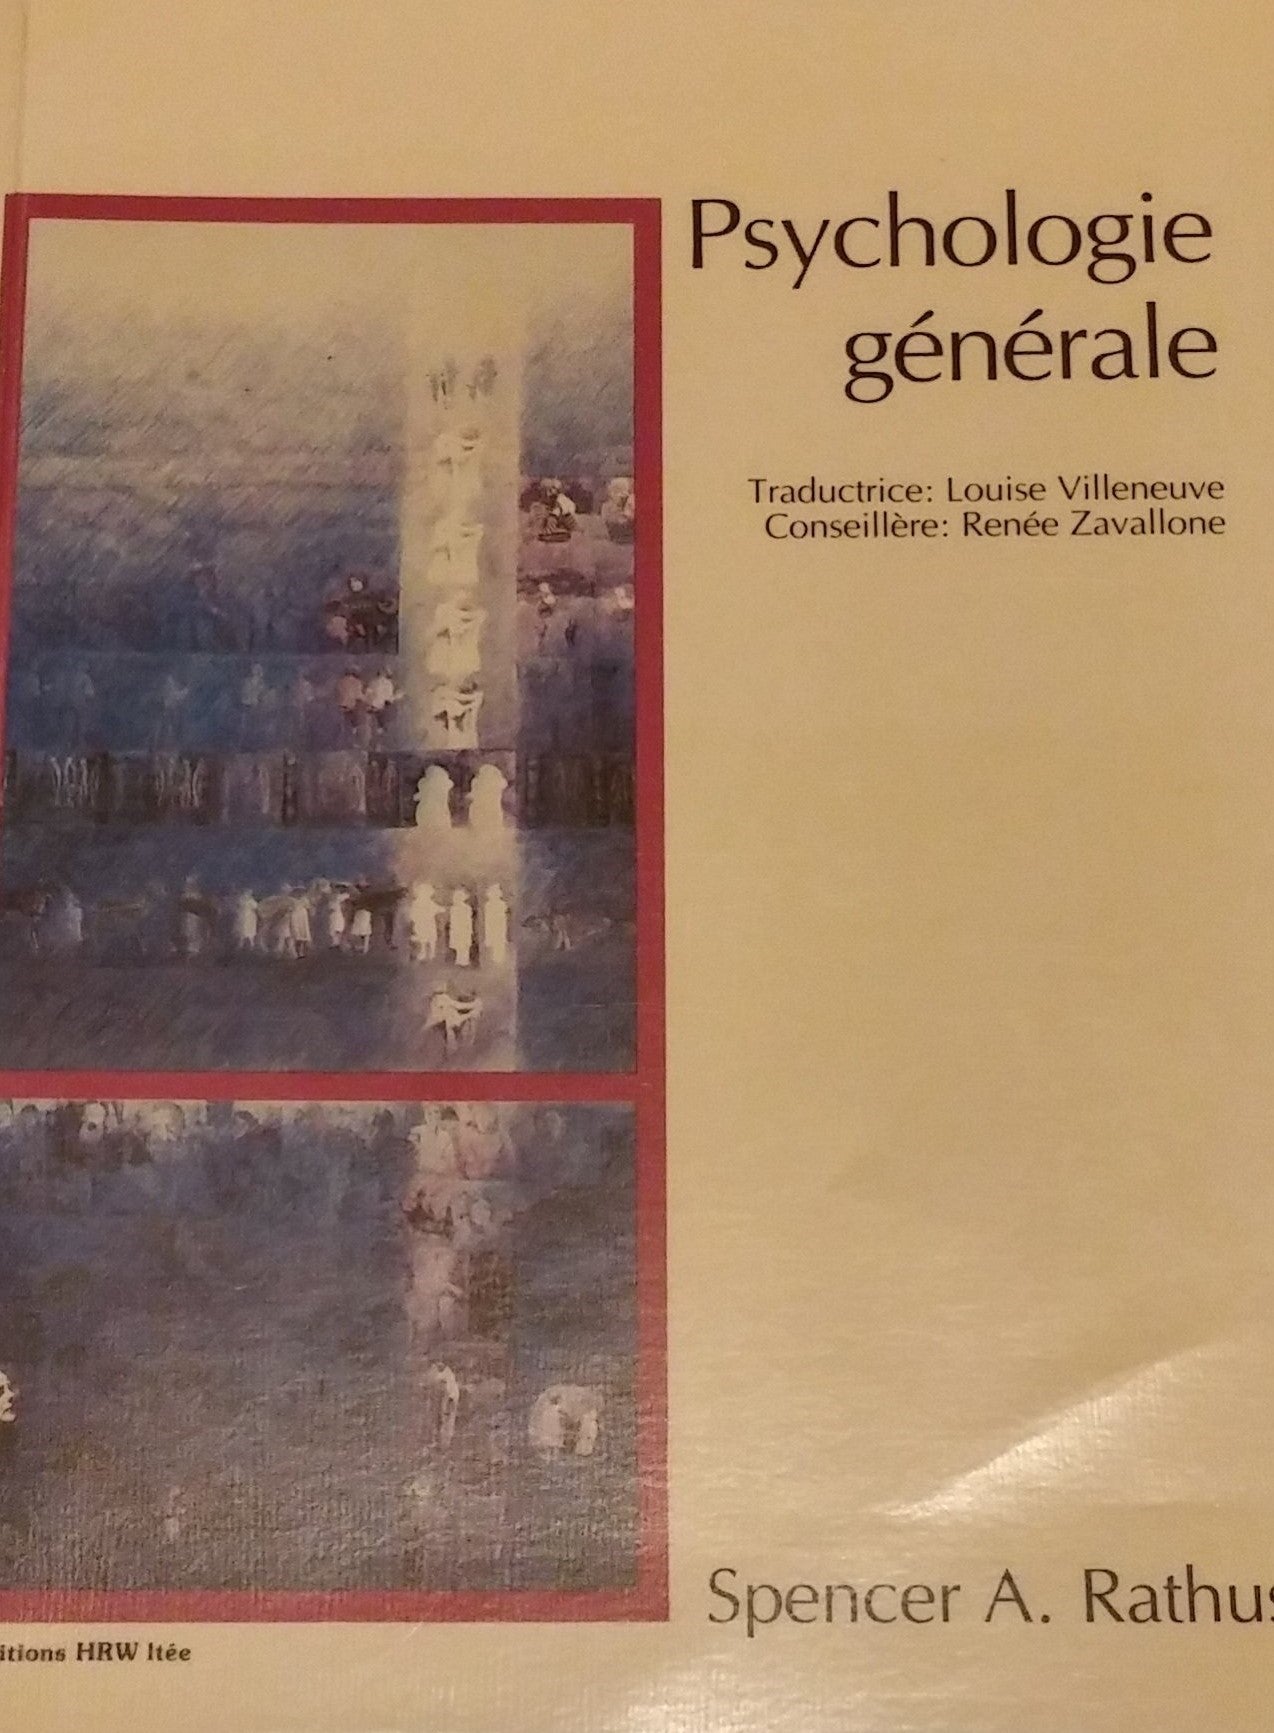 Psychologie générale - Spencer A. Rathus